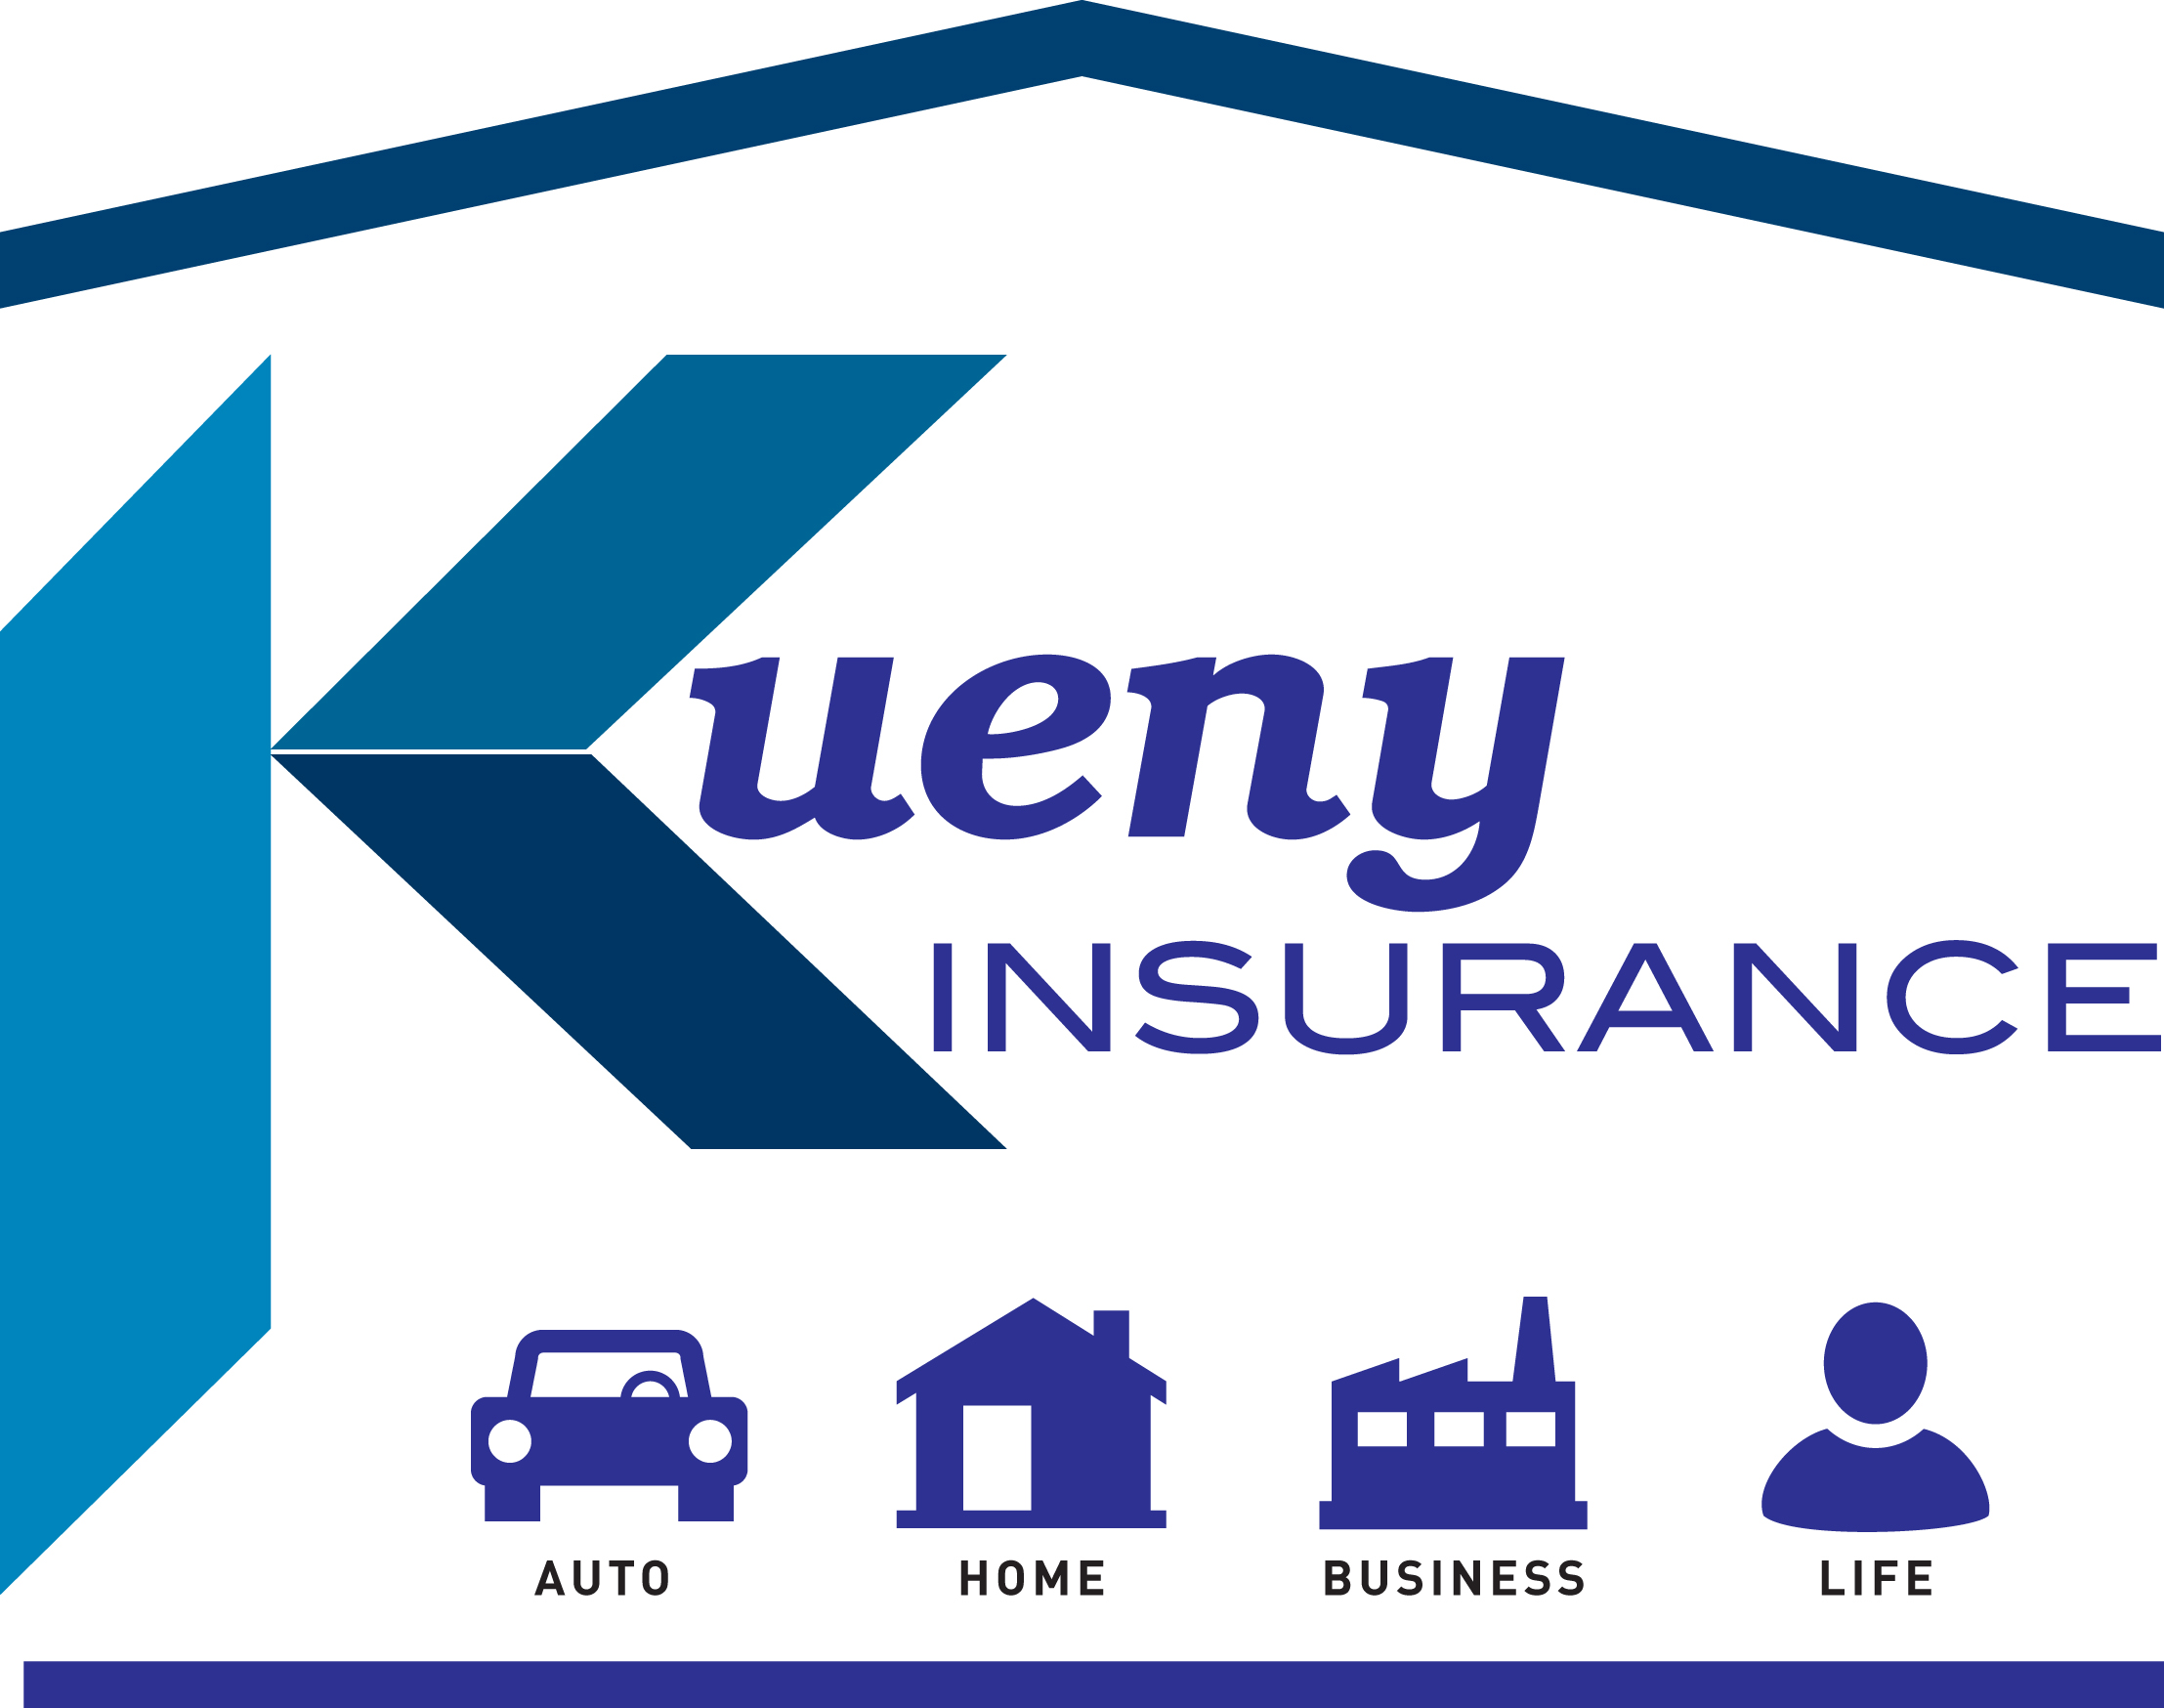 Kueny Insurance